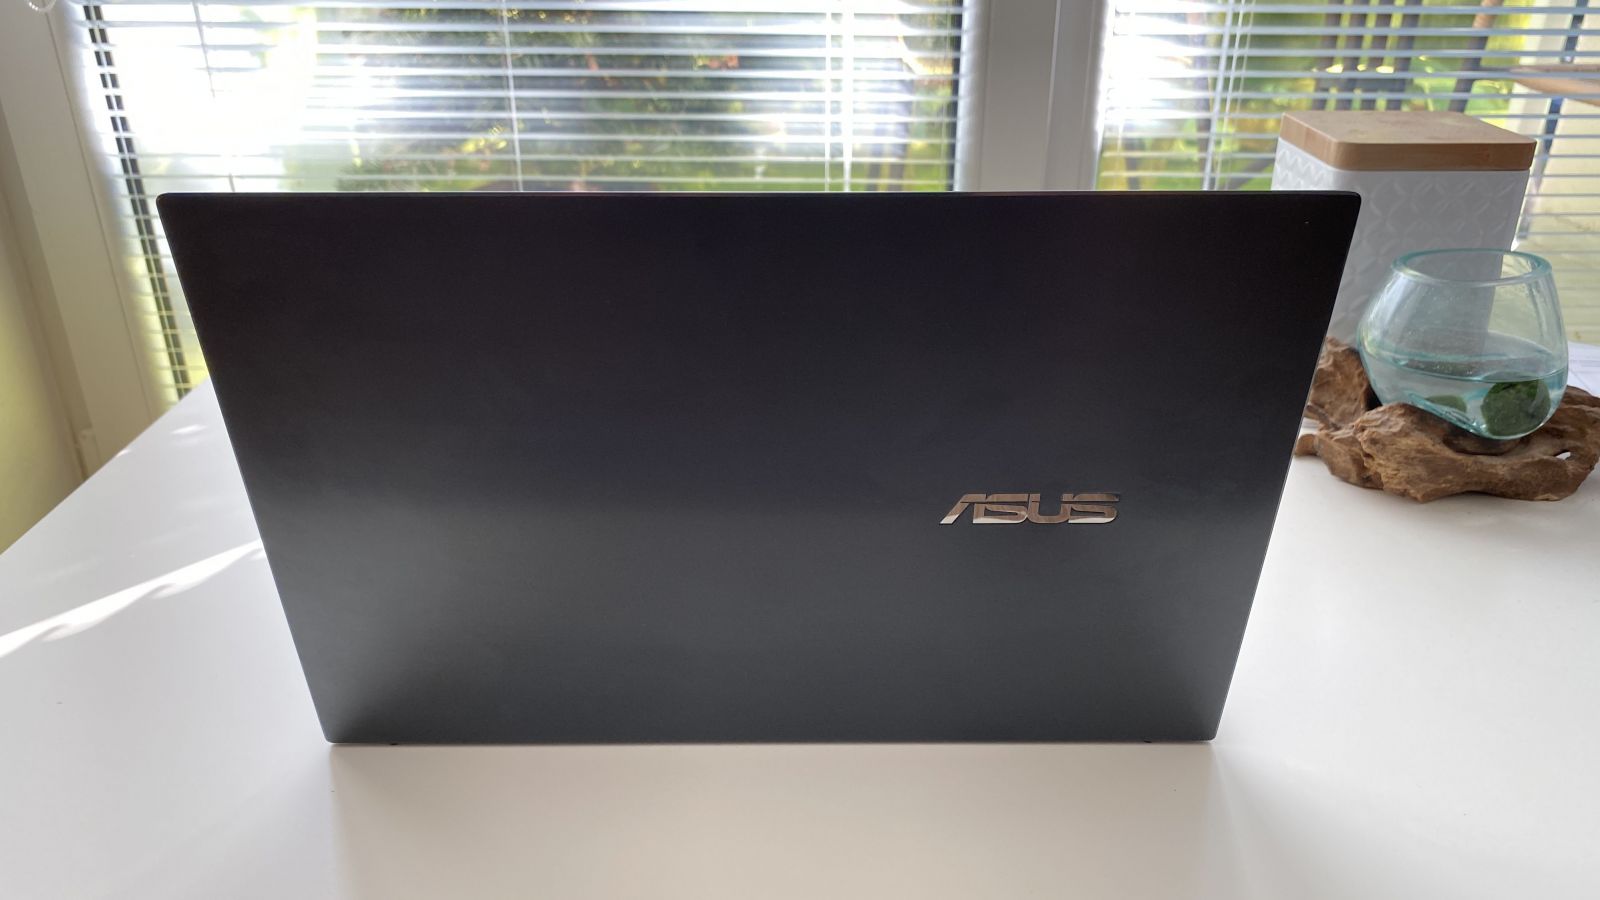 Asus ZenBook 14 - toto je ideálny ultrabook na doma aj na intrák už od 899 eur (Recenzia)